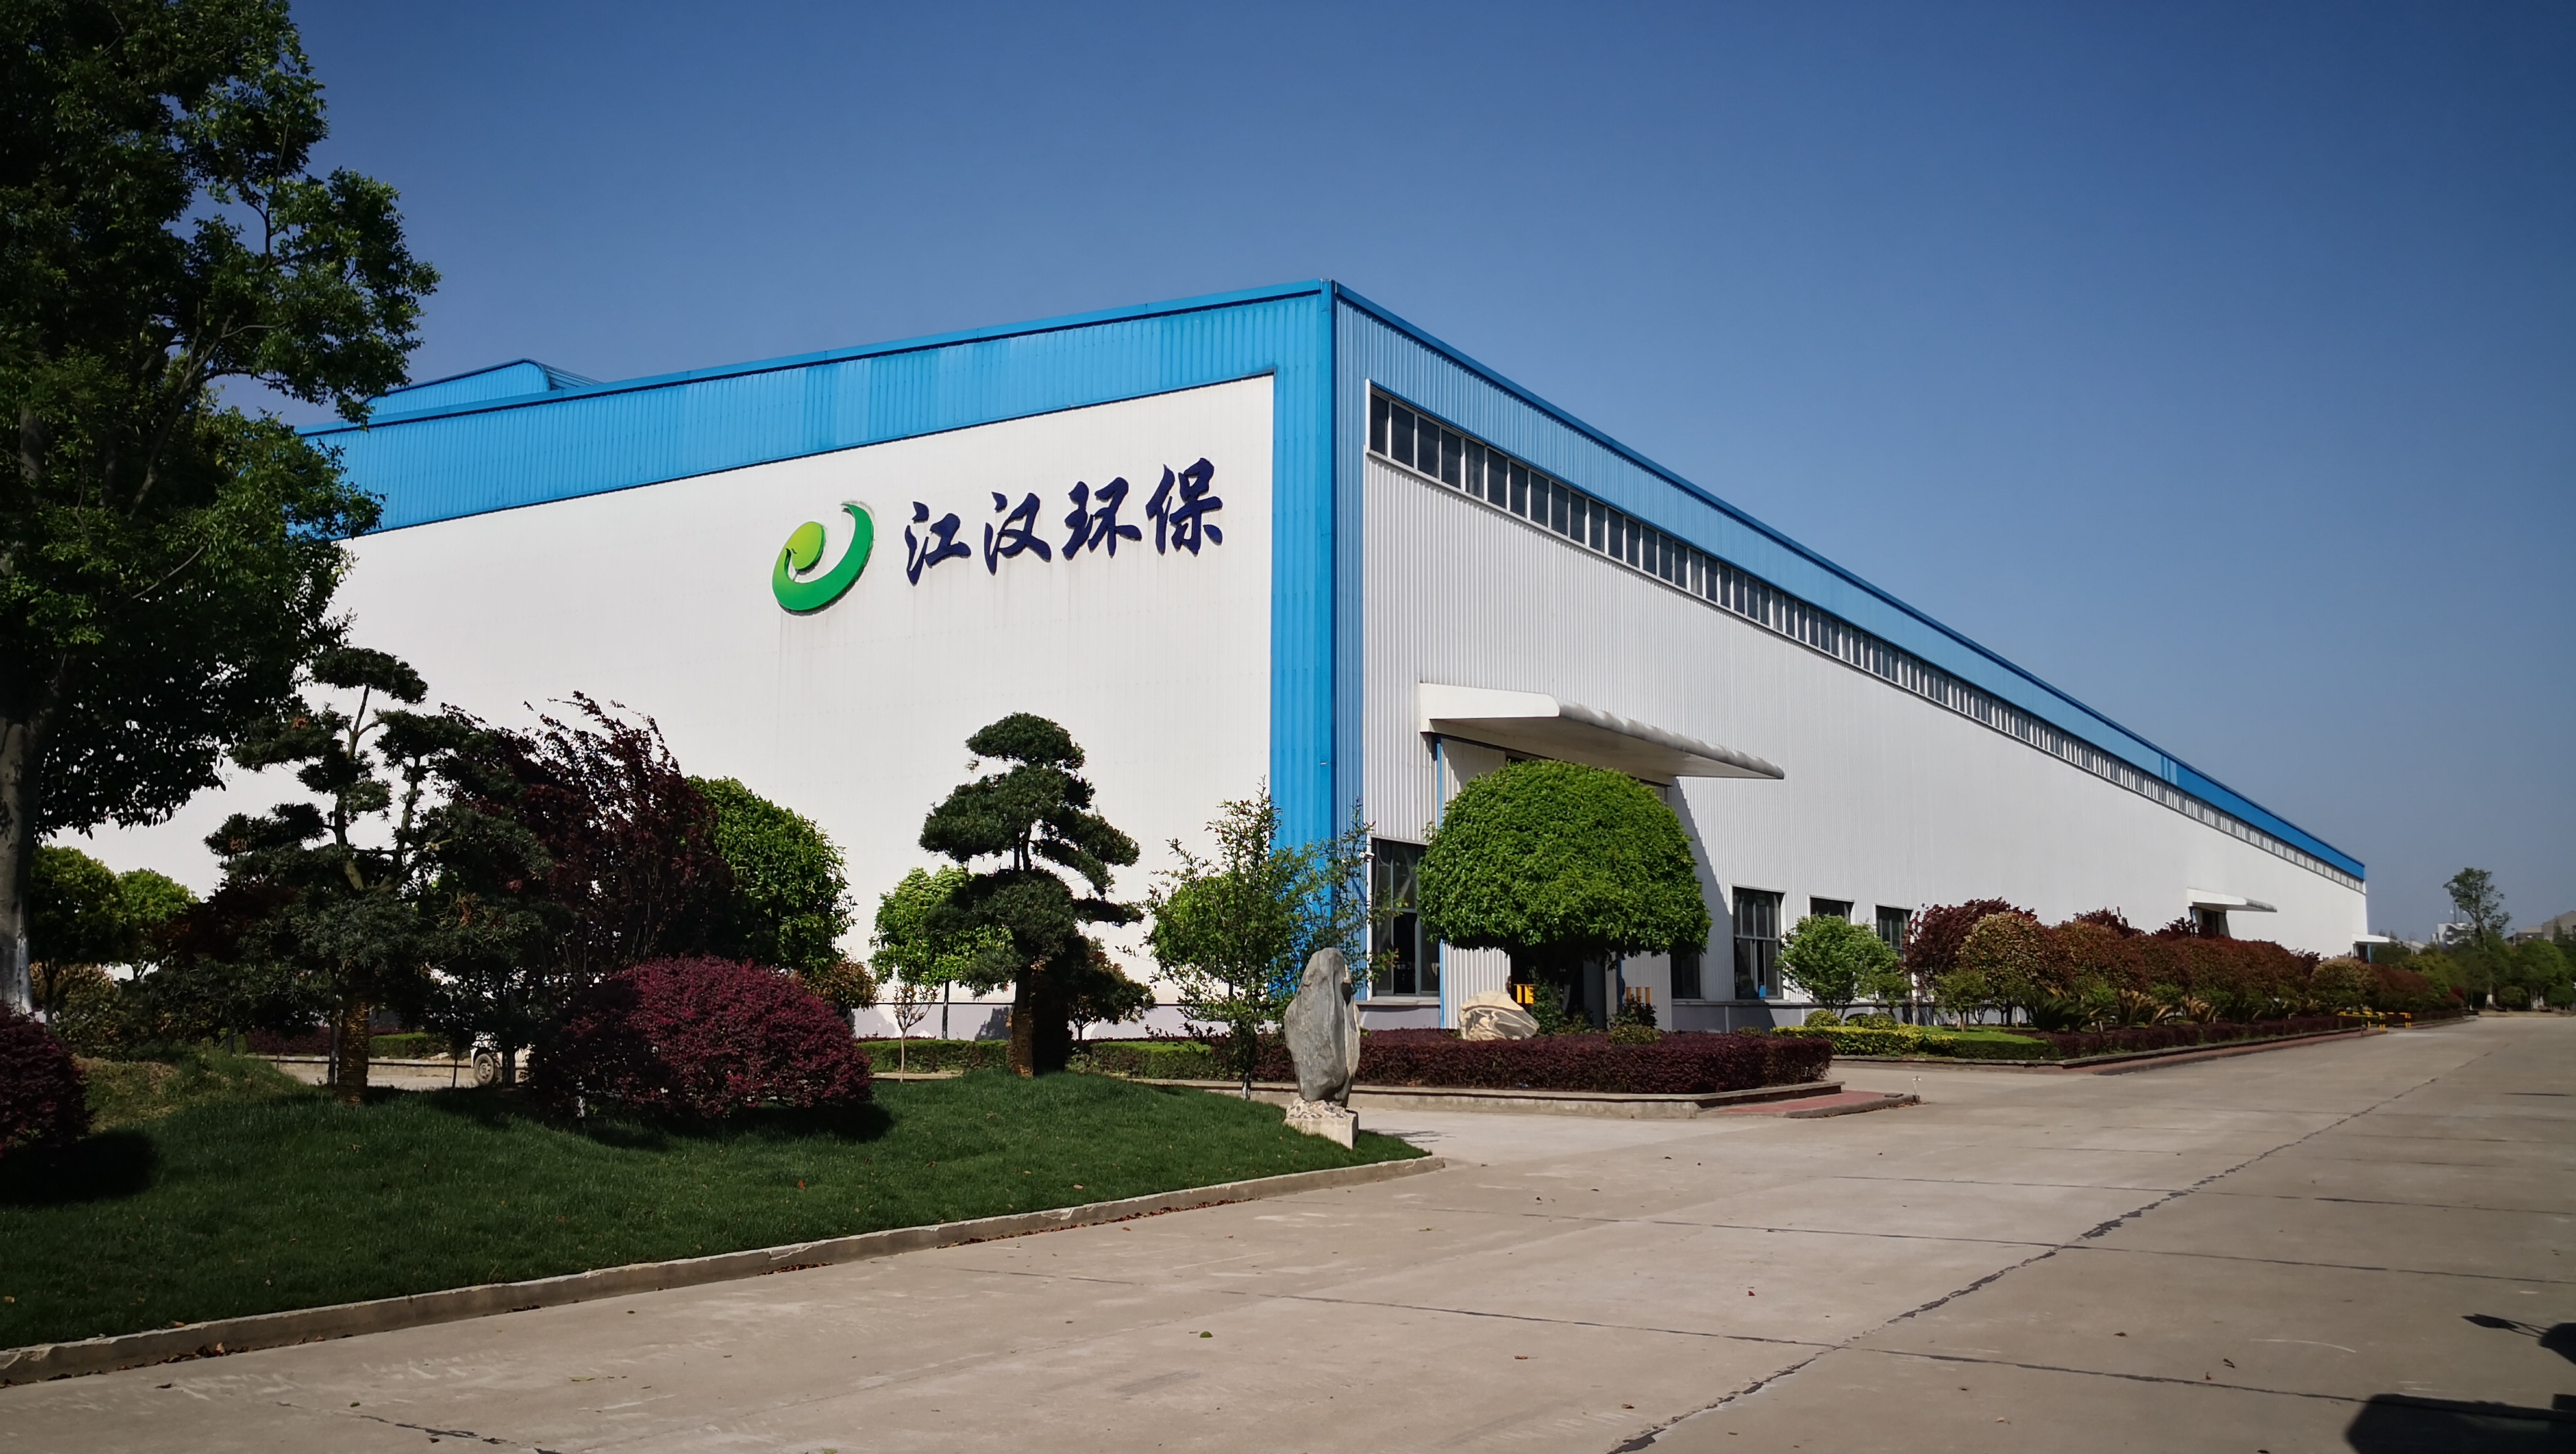 Hubei Qianjiang Jianghan Environmental Protection Co., Ltd